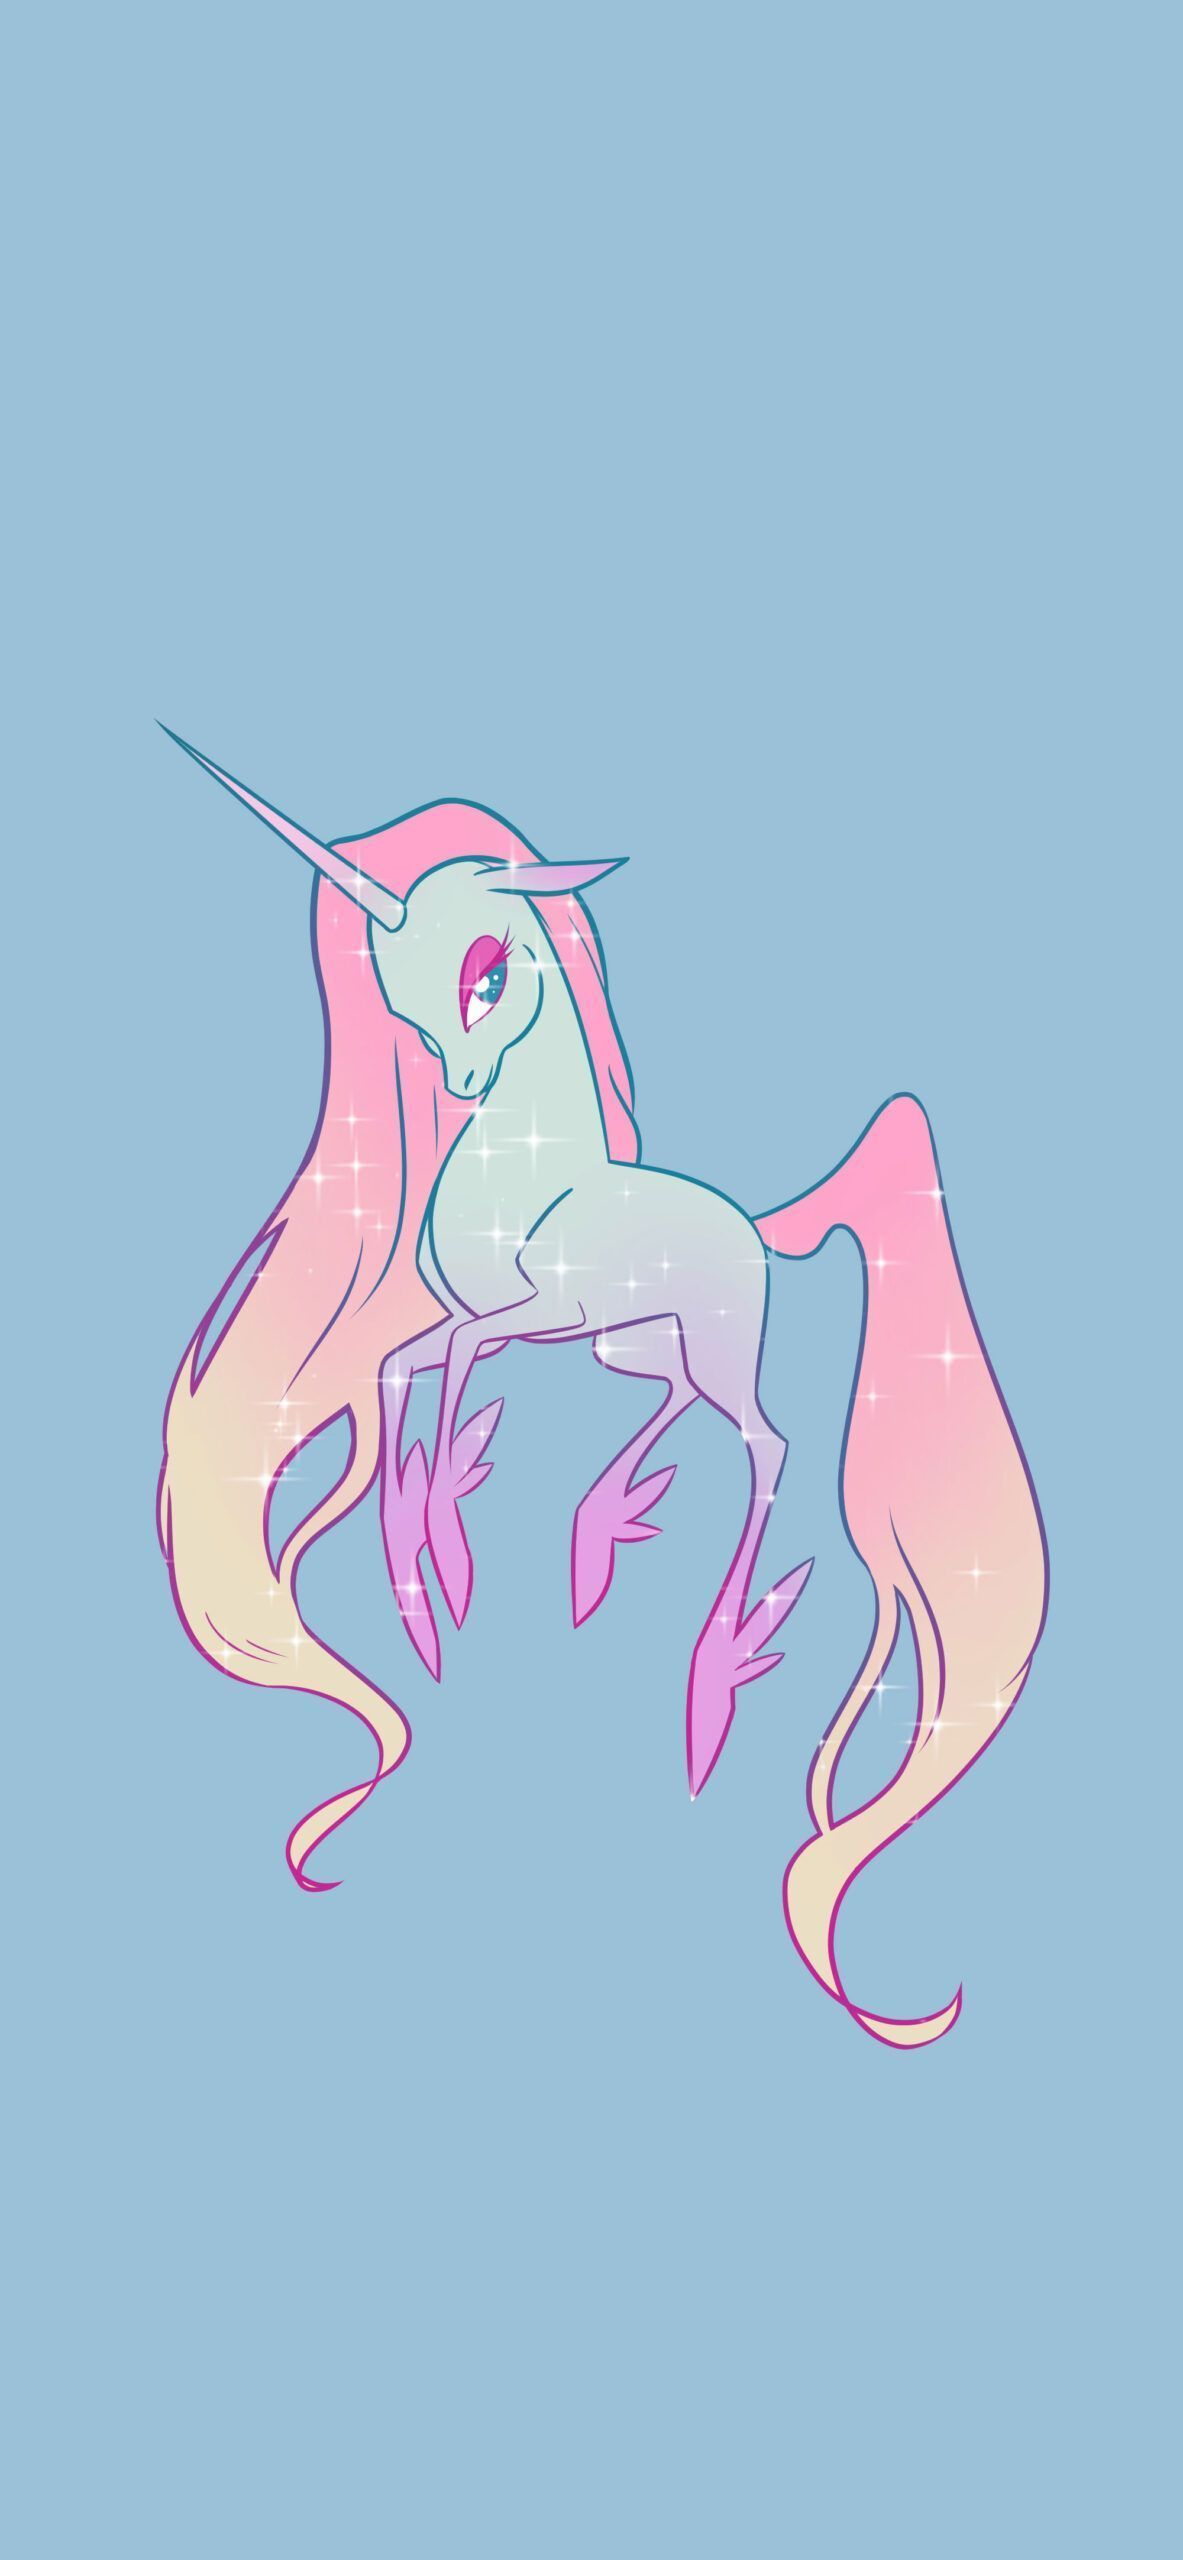 A cute unicorn with long hair and pink horn - Blue, cute, unicorn, light blue, mermaid, magic